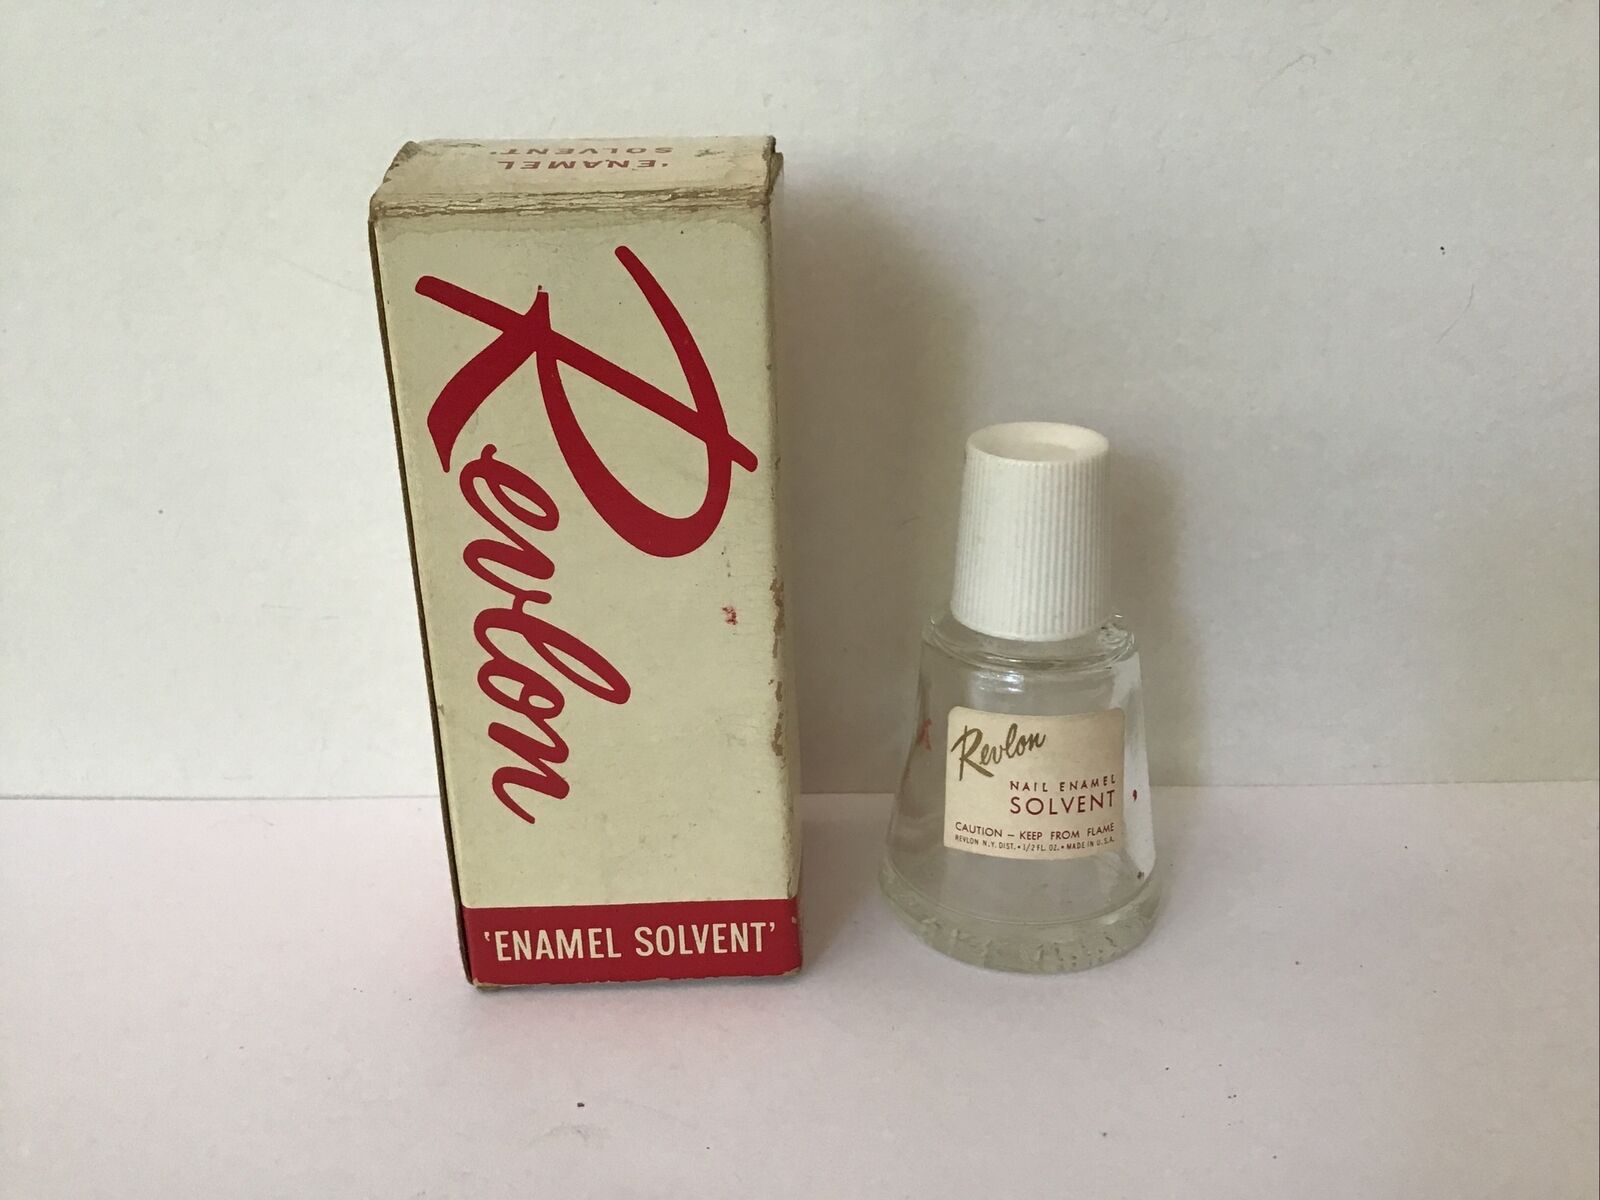 VTG 40's 50's Revlon Nail Polish in Original Box - Enamel Solvent - Movie Prop